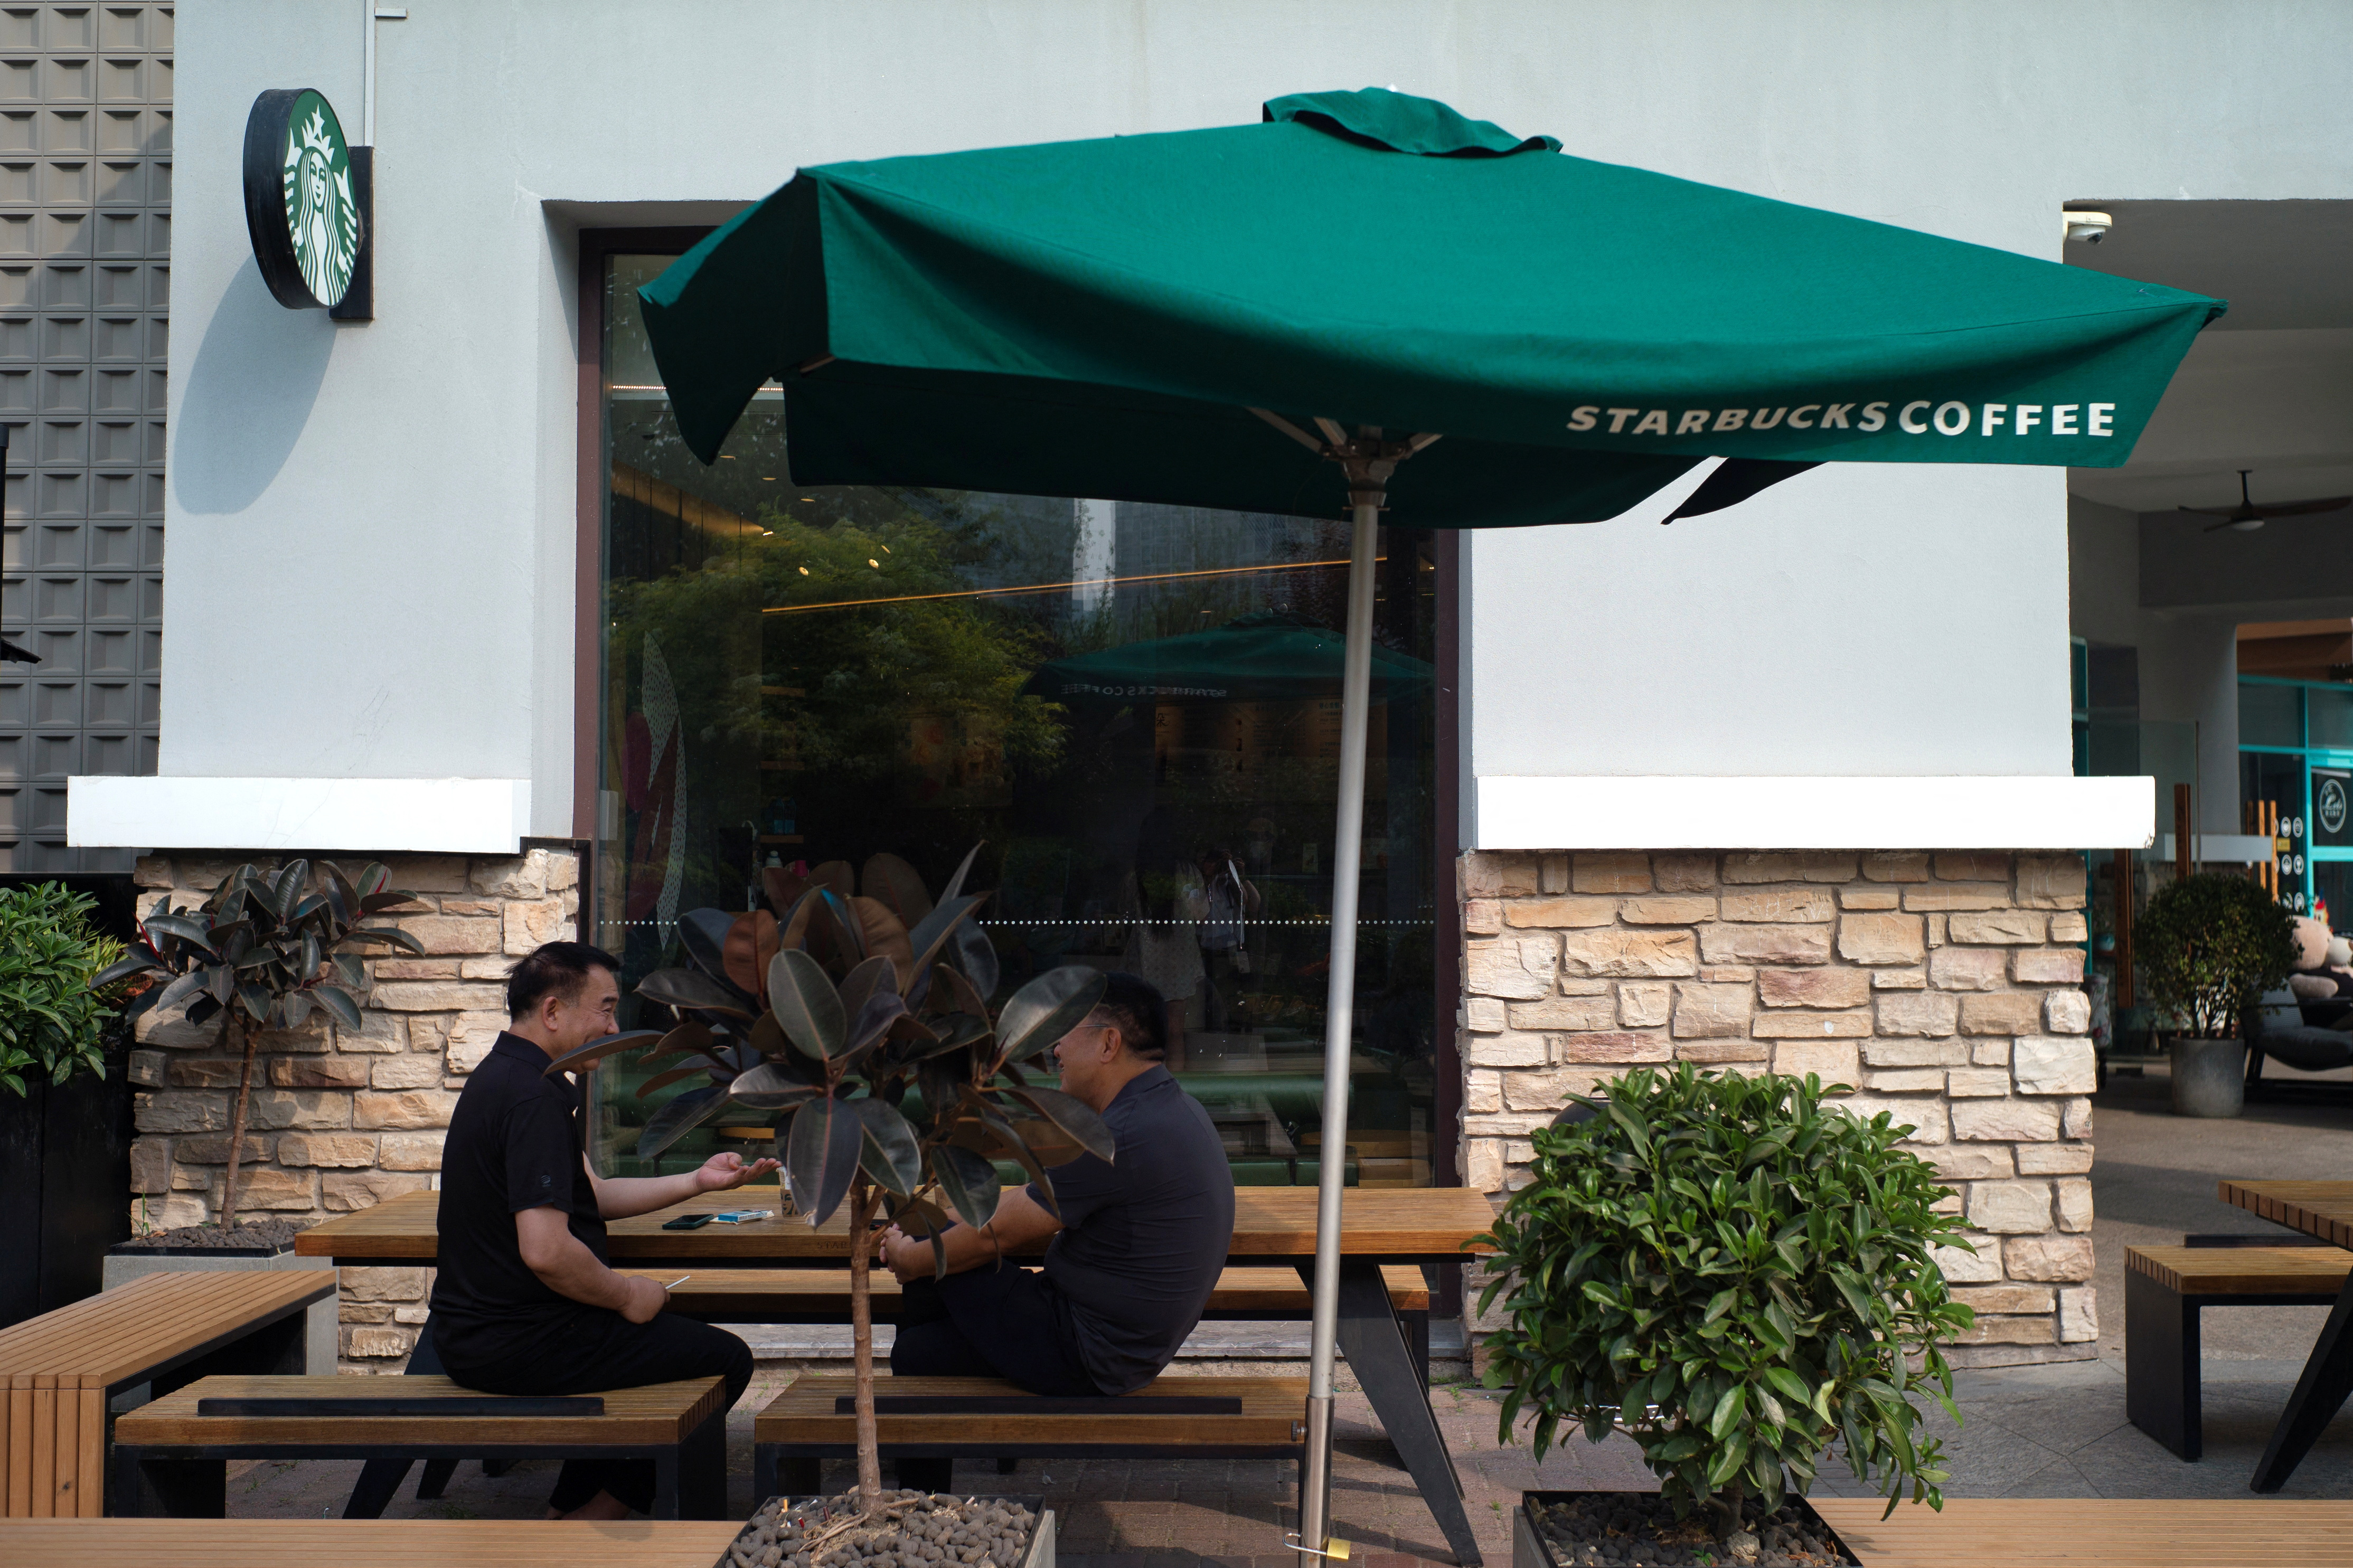 People sit outside a Starbucks coffee shop in Beijing